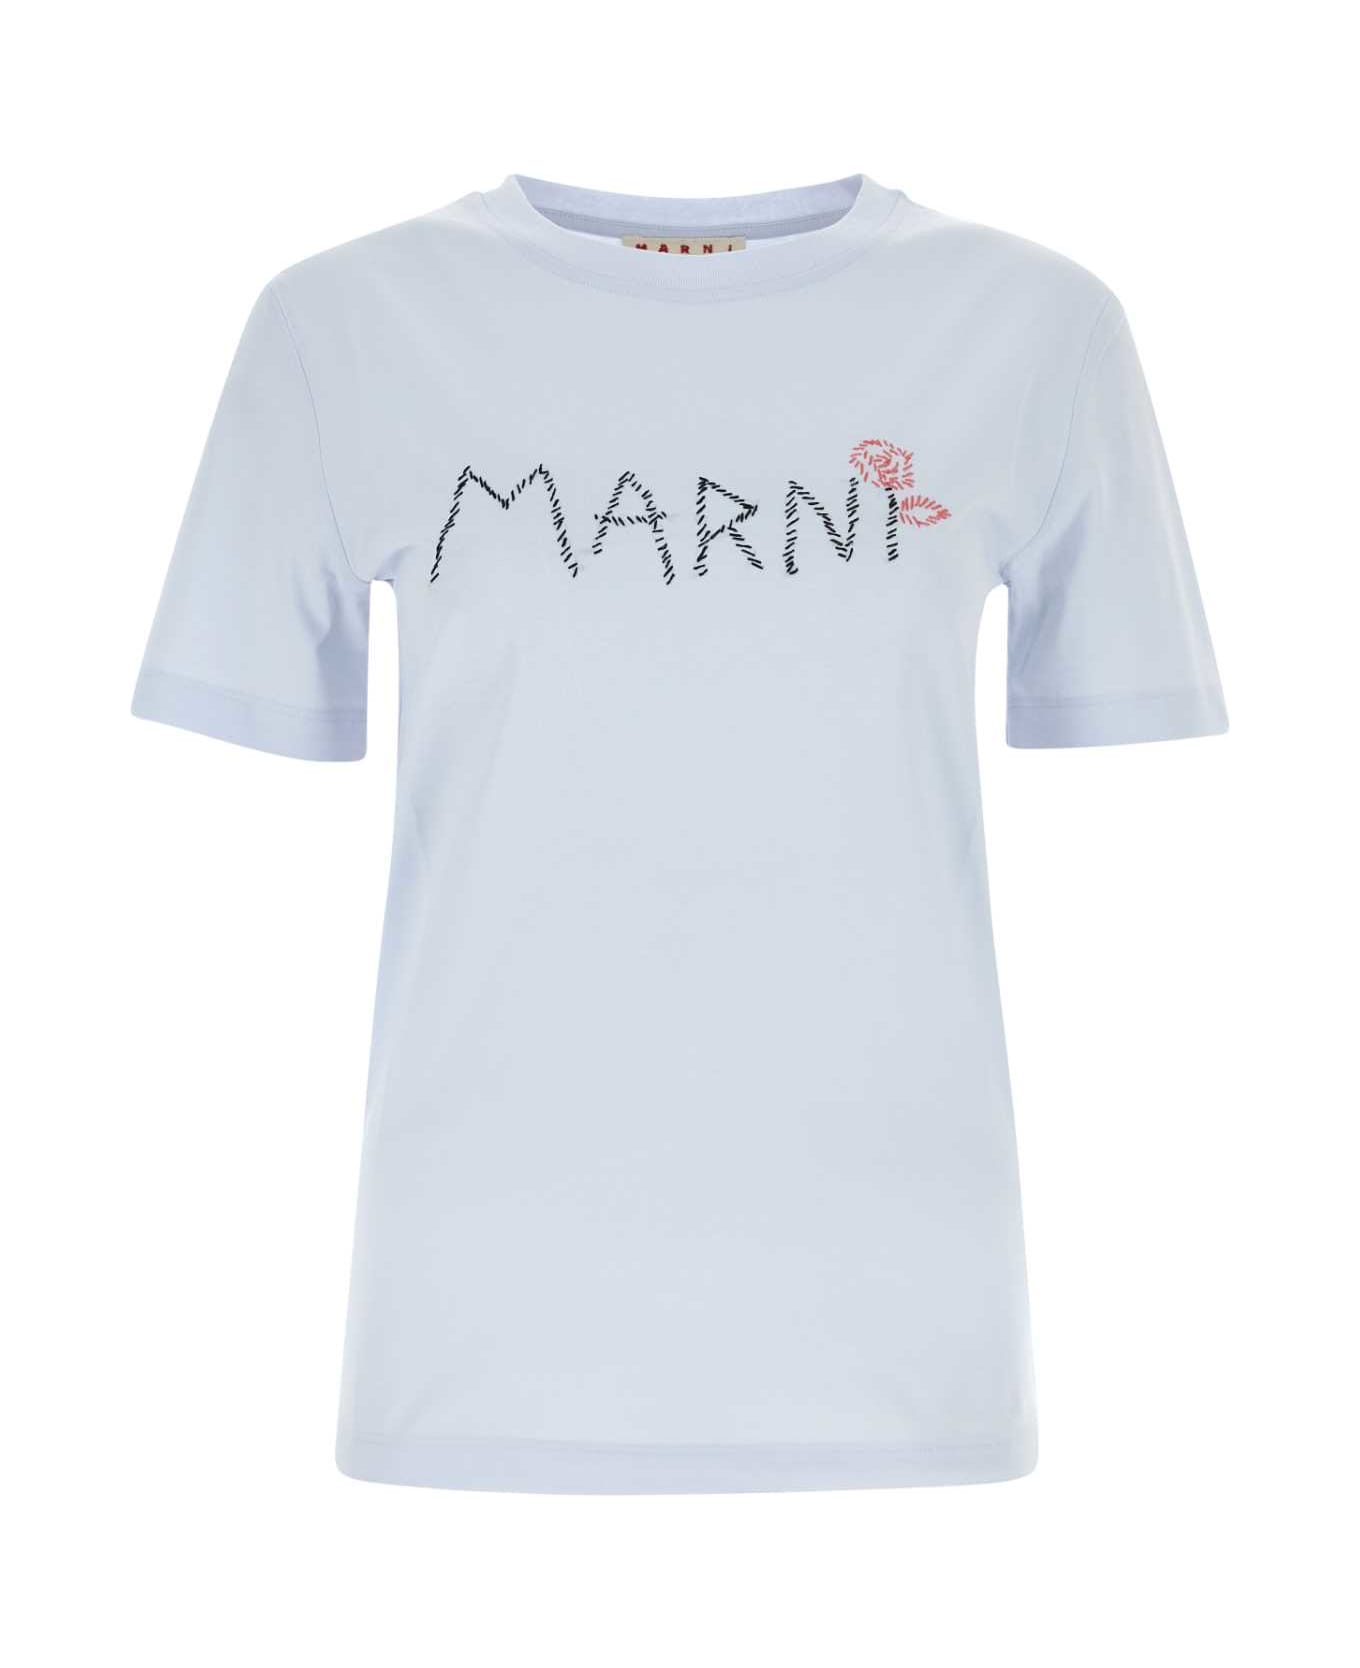 Marni Light Blue T-shirt With Marni Stitching - 00B21